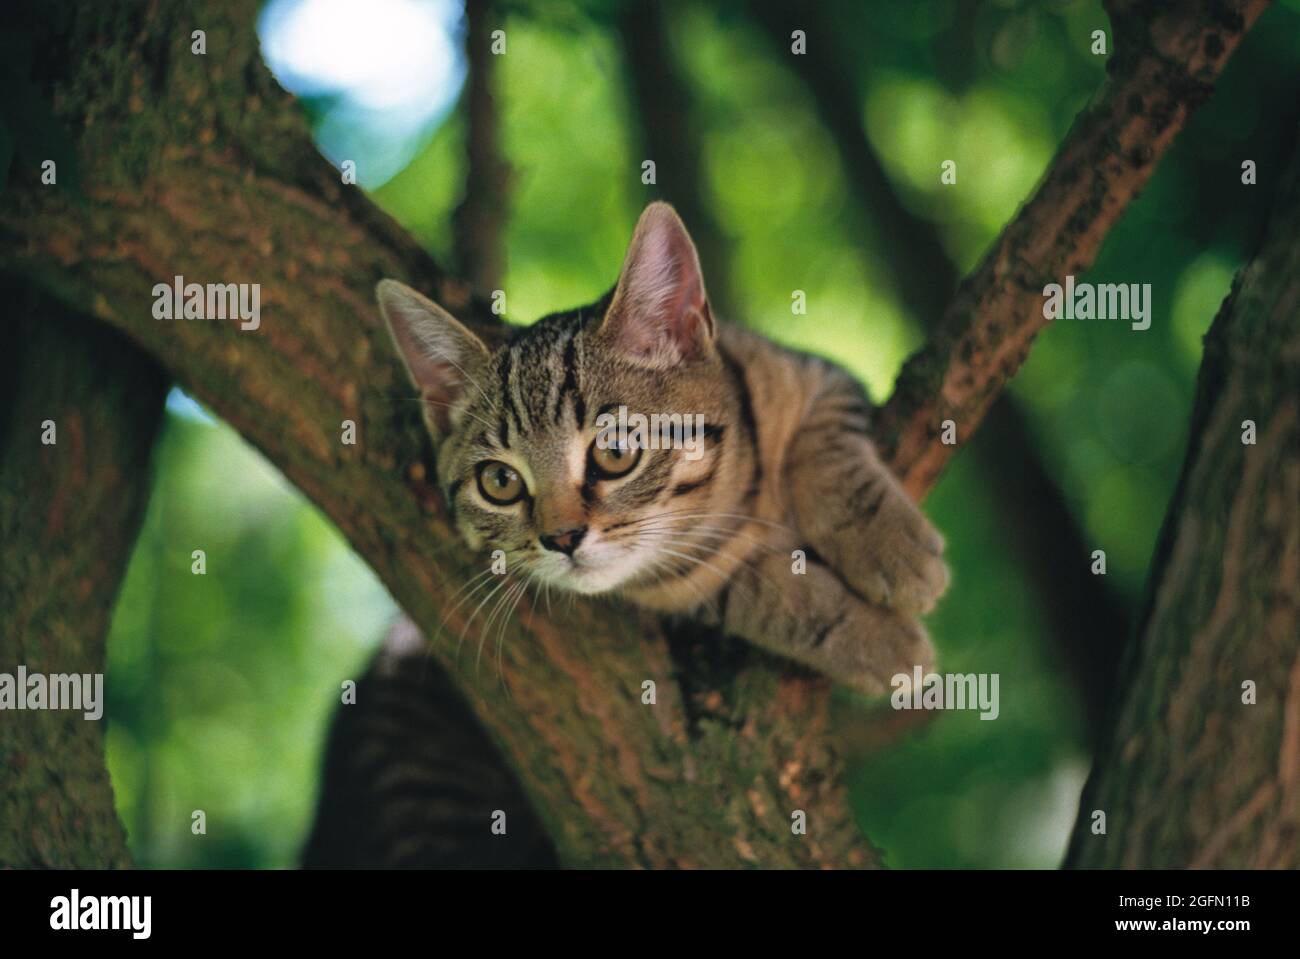 Animals. Tabby Cat outdoors up a tree. Stock Photo